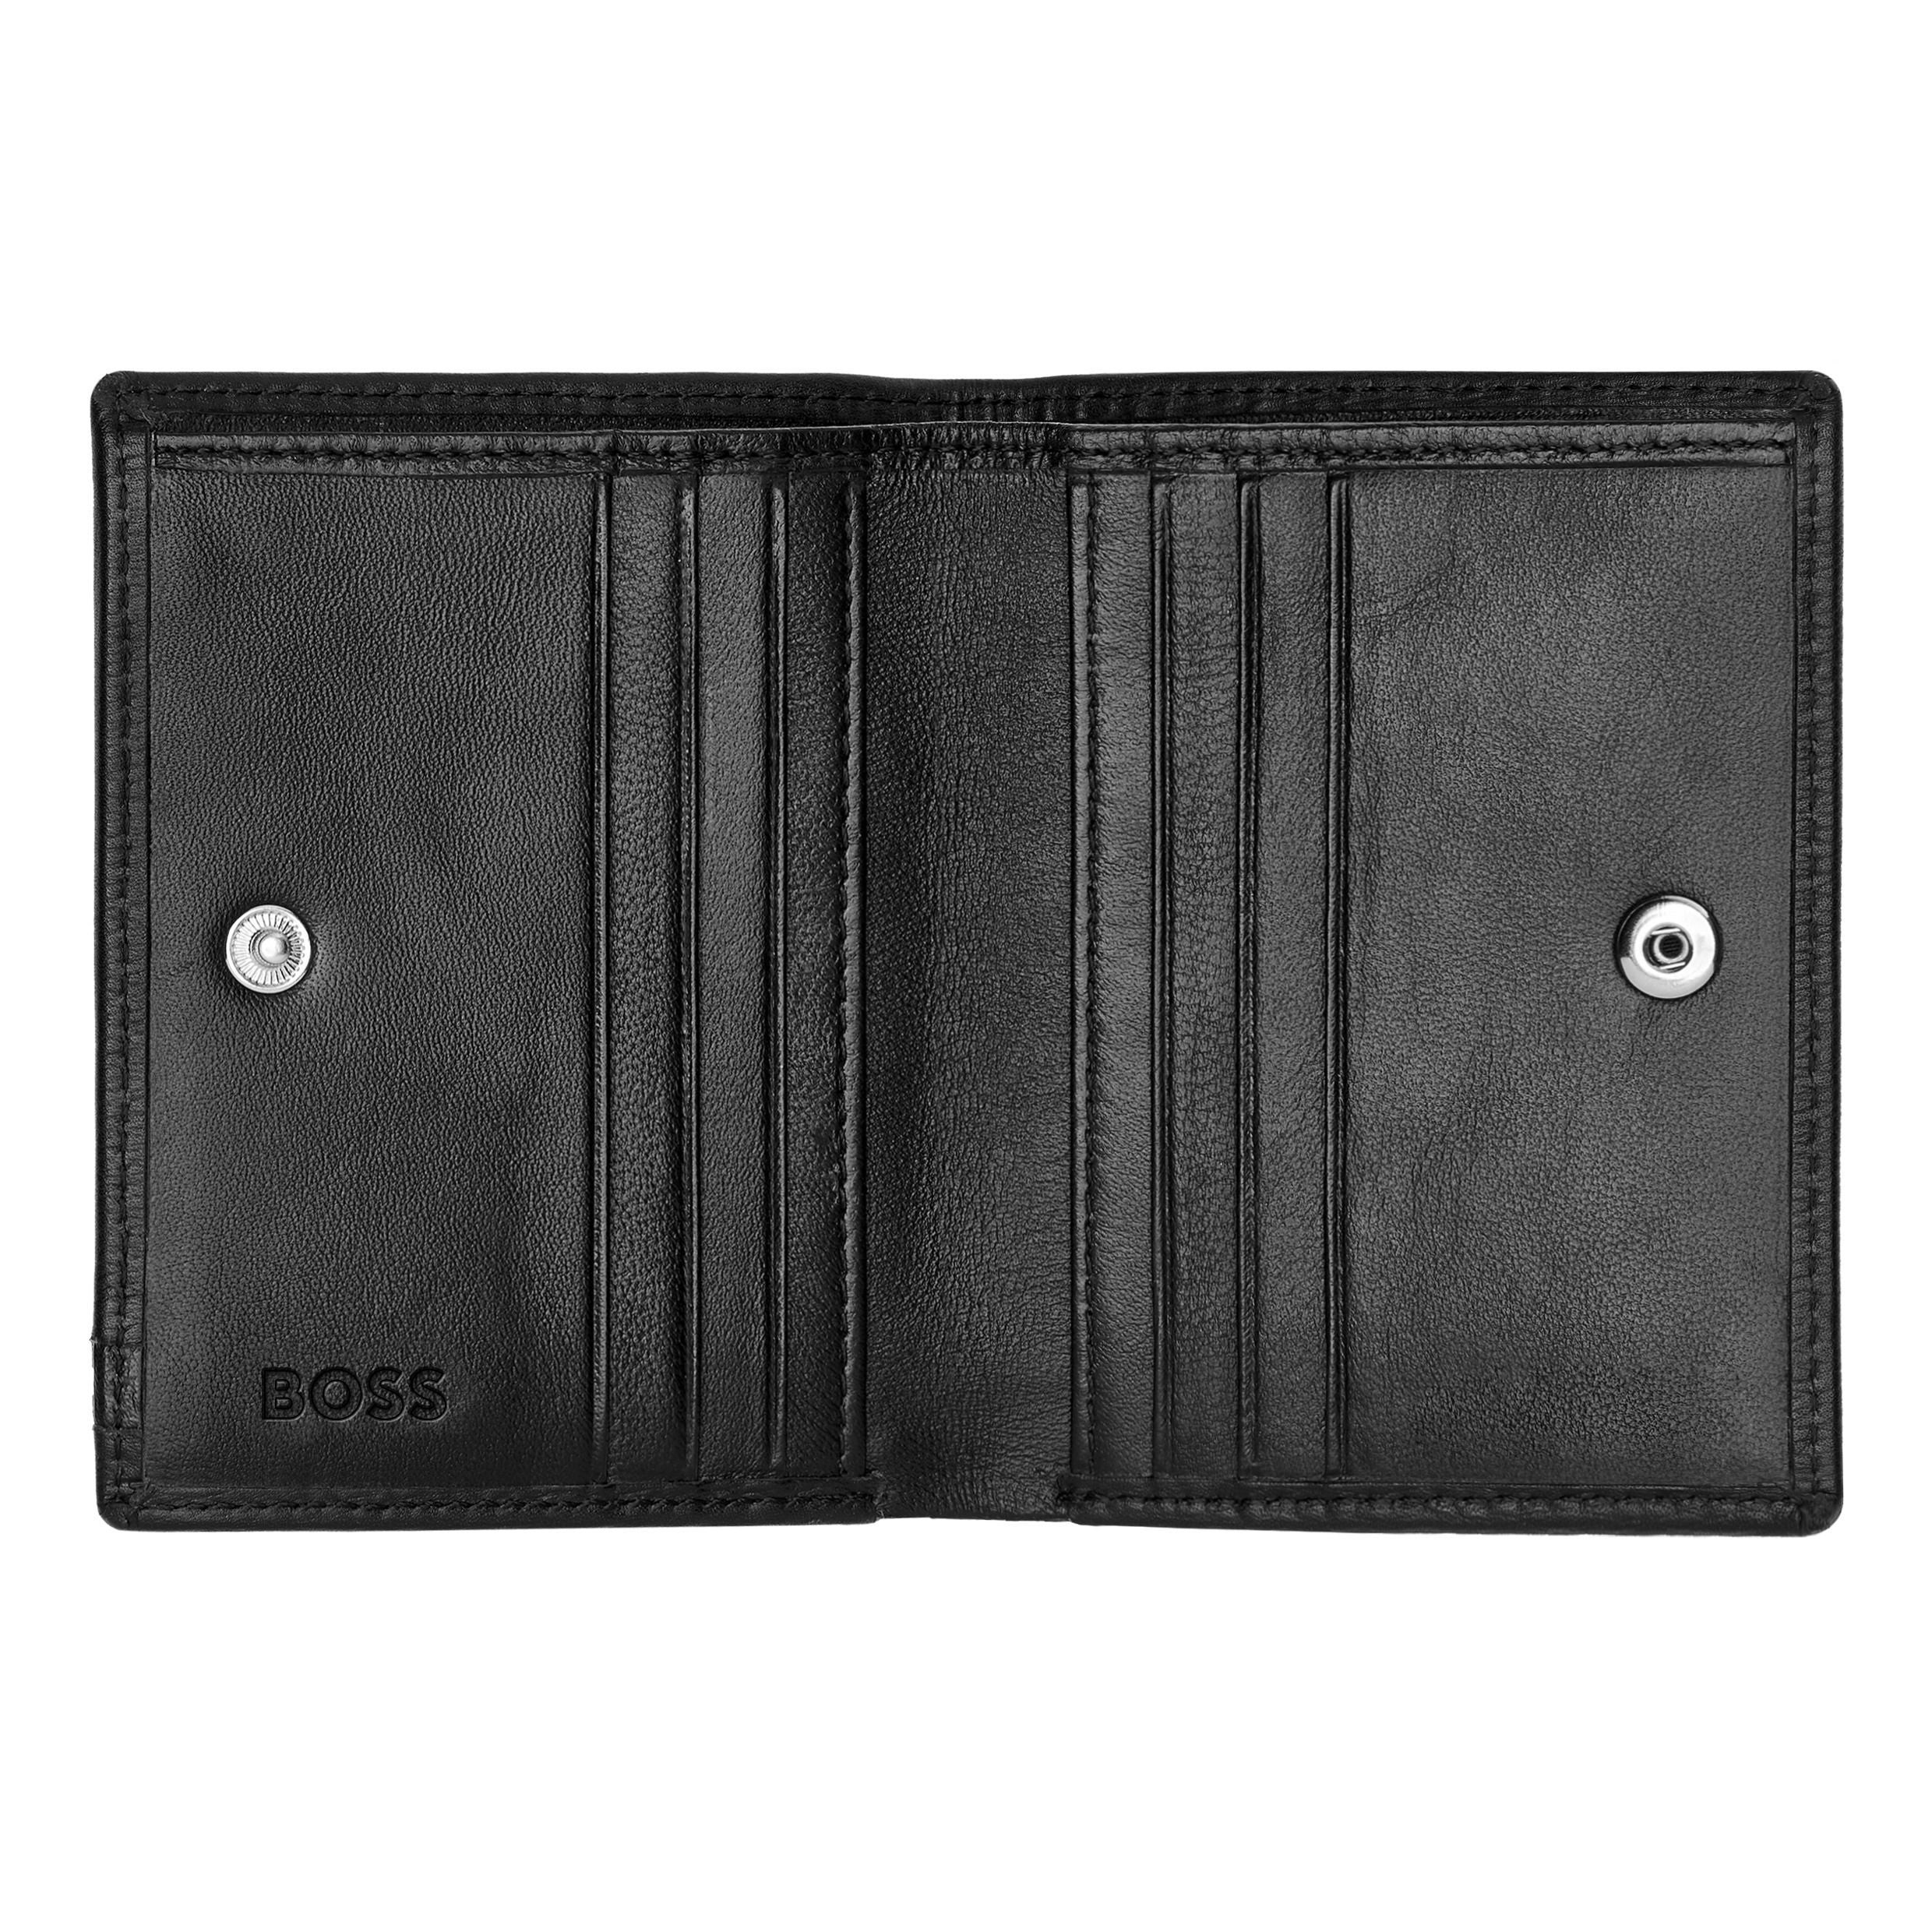 Leather Folding card holder Iconic Black